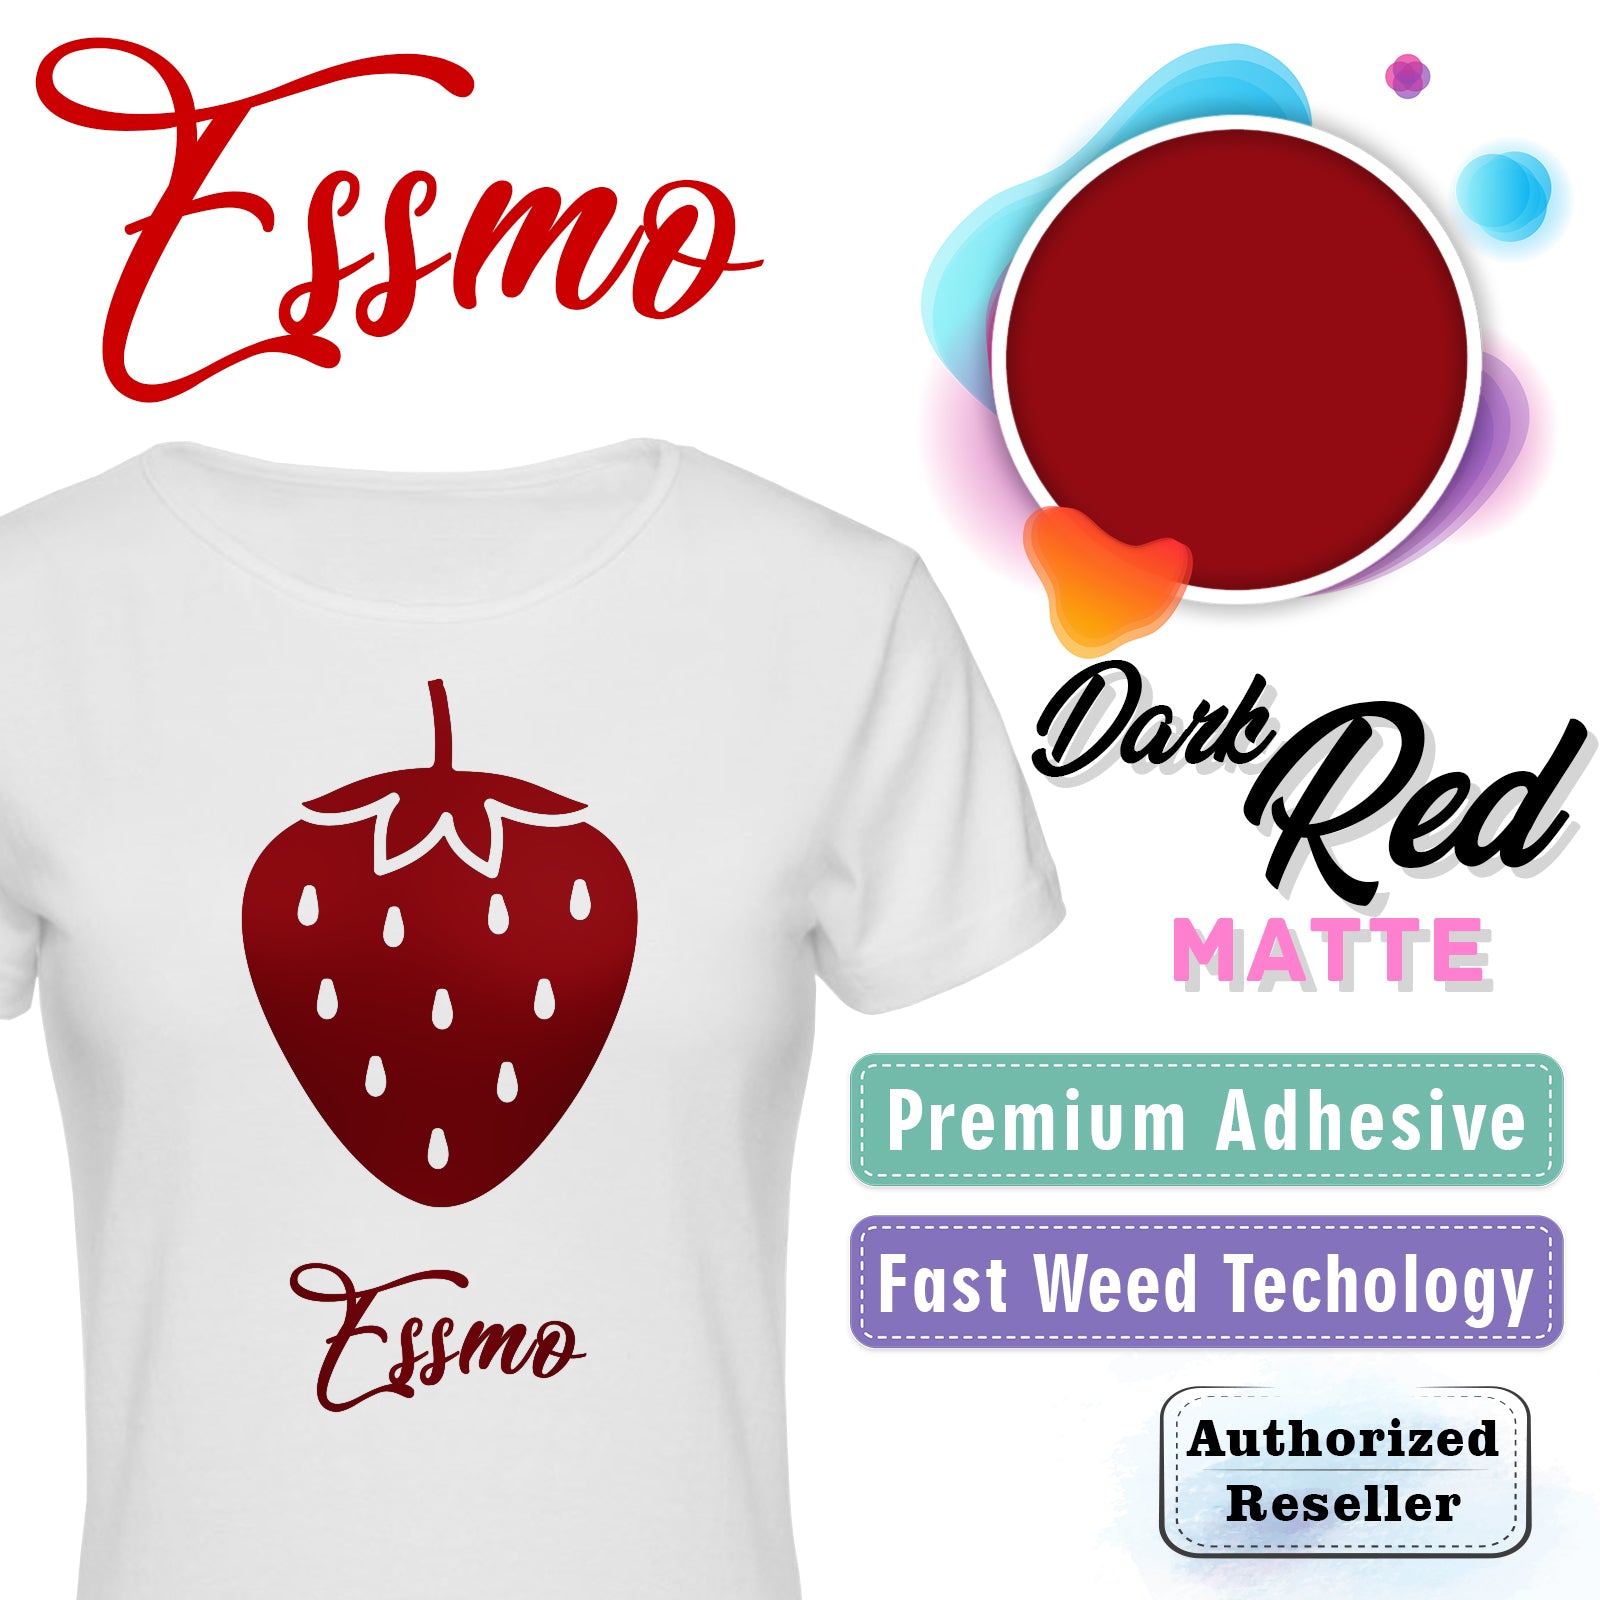 ESSMO™ Dark Red Matte Solid Heat Transfer Vinyl HTV DP06